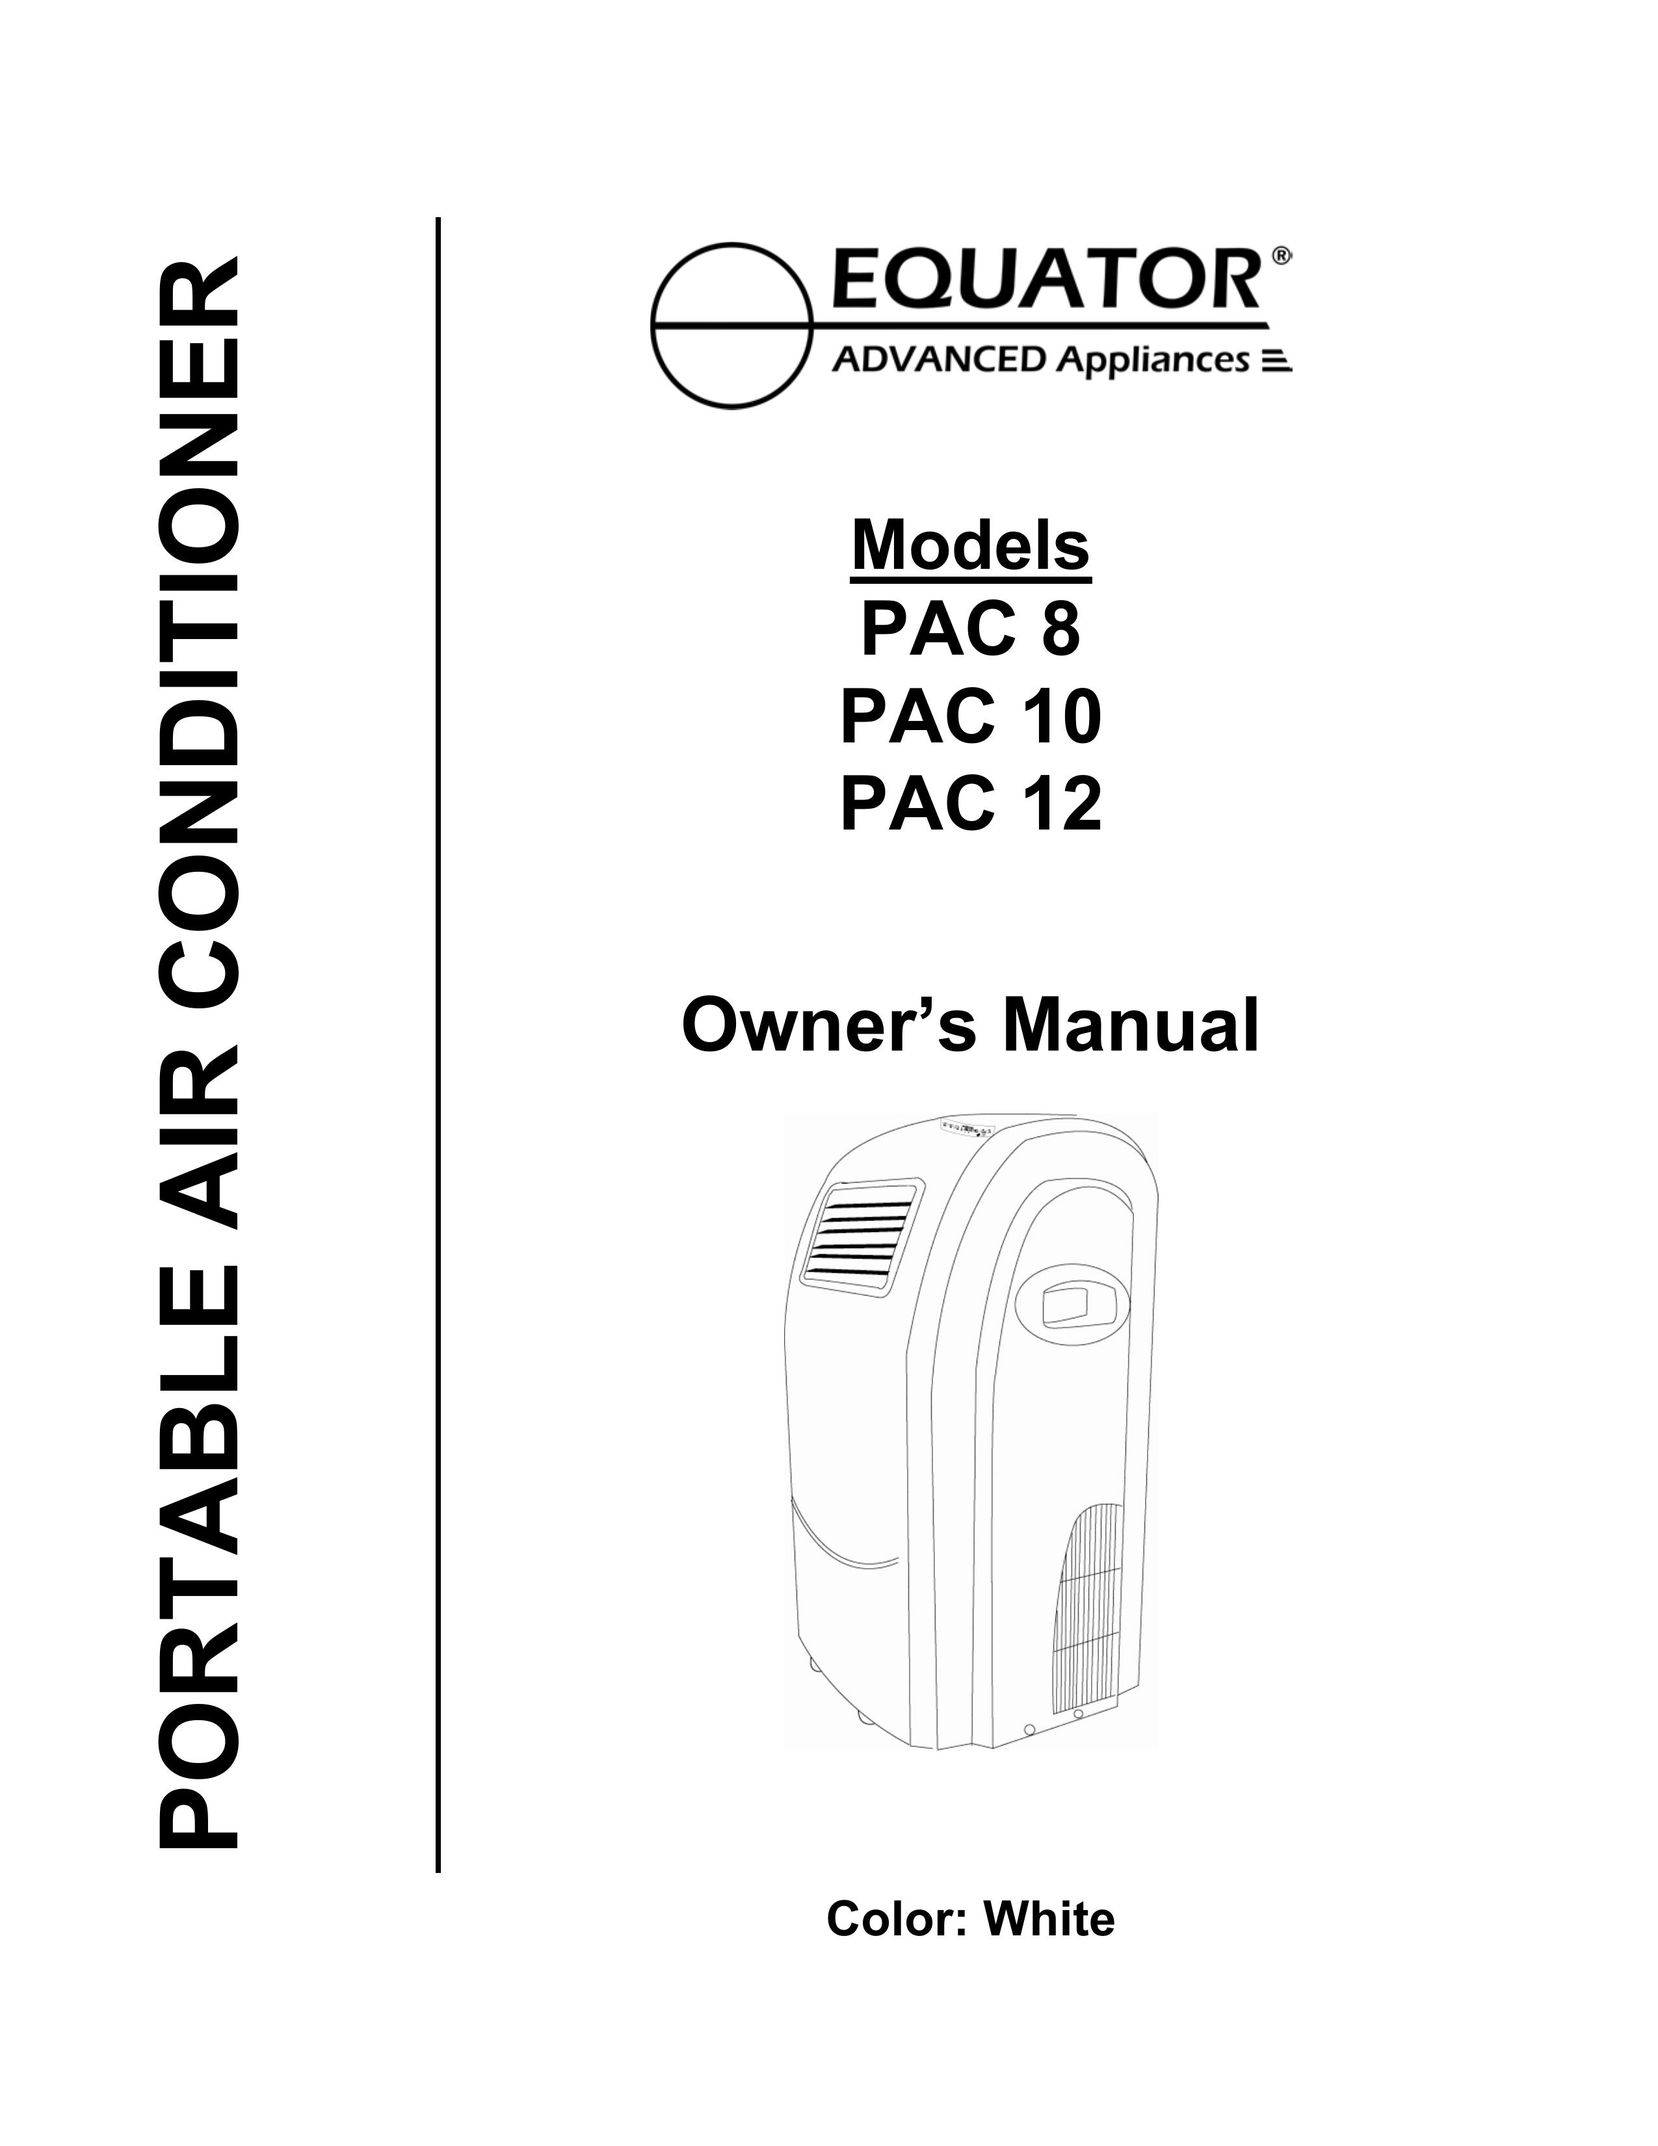 Equator PAC 12 Air Conditioner User Manual